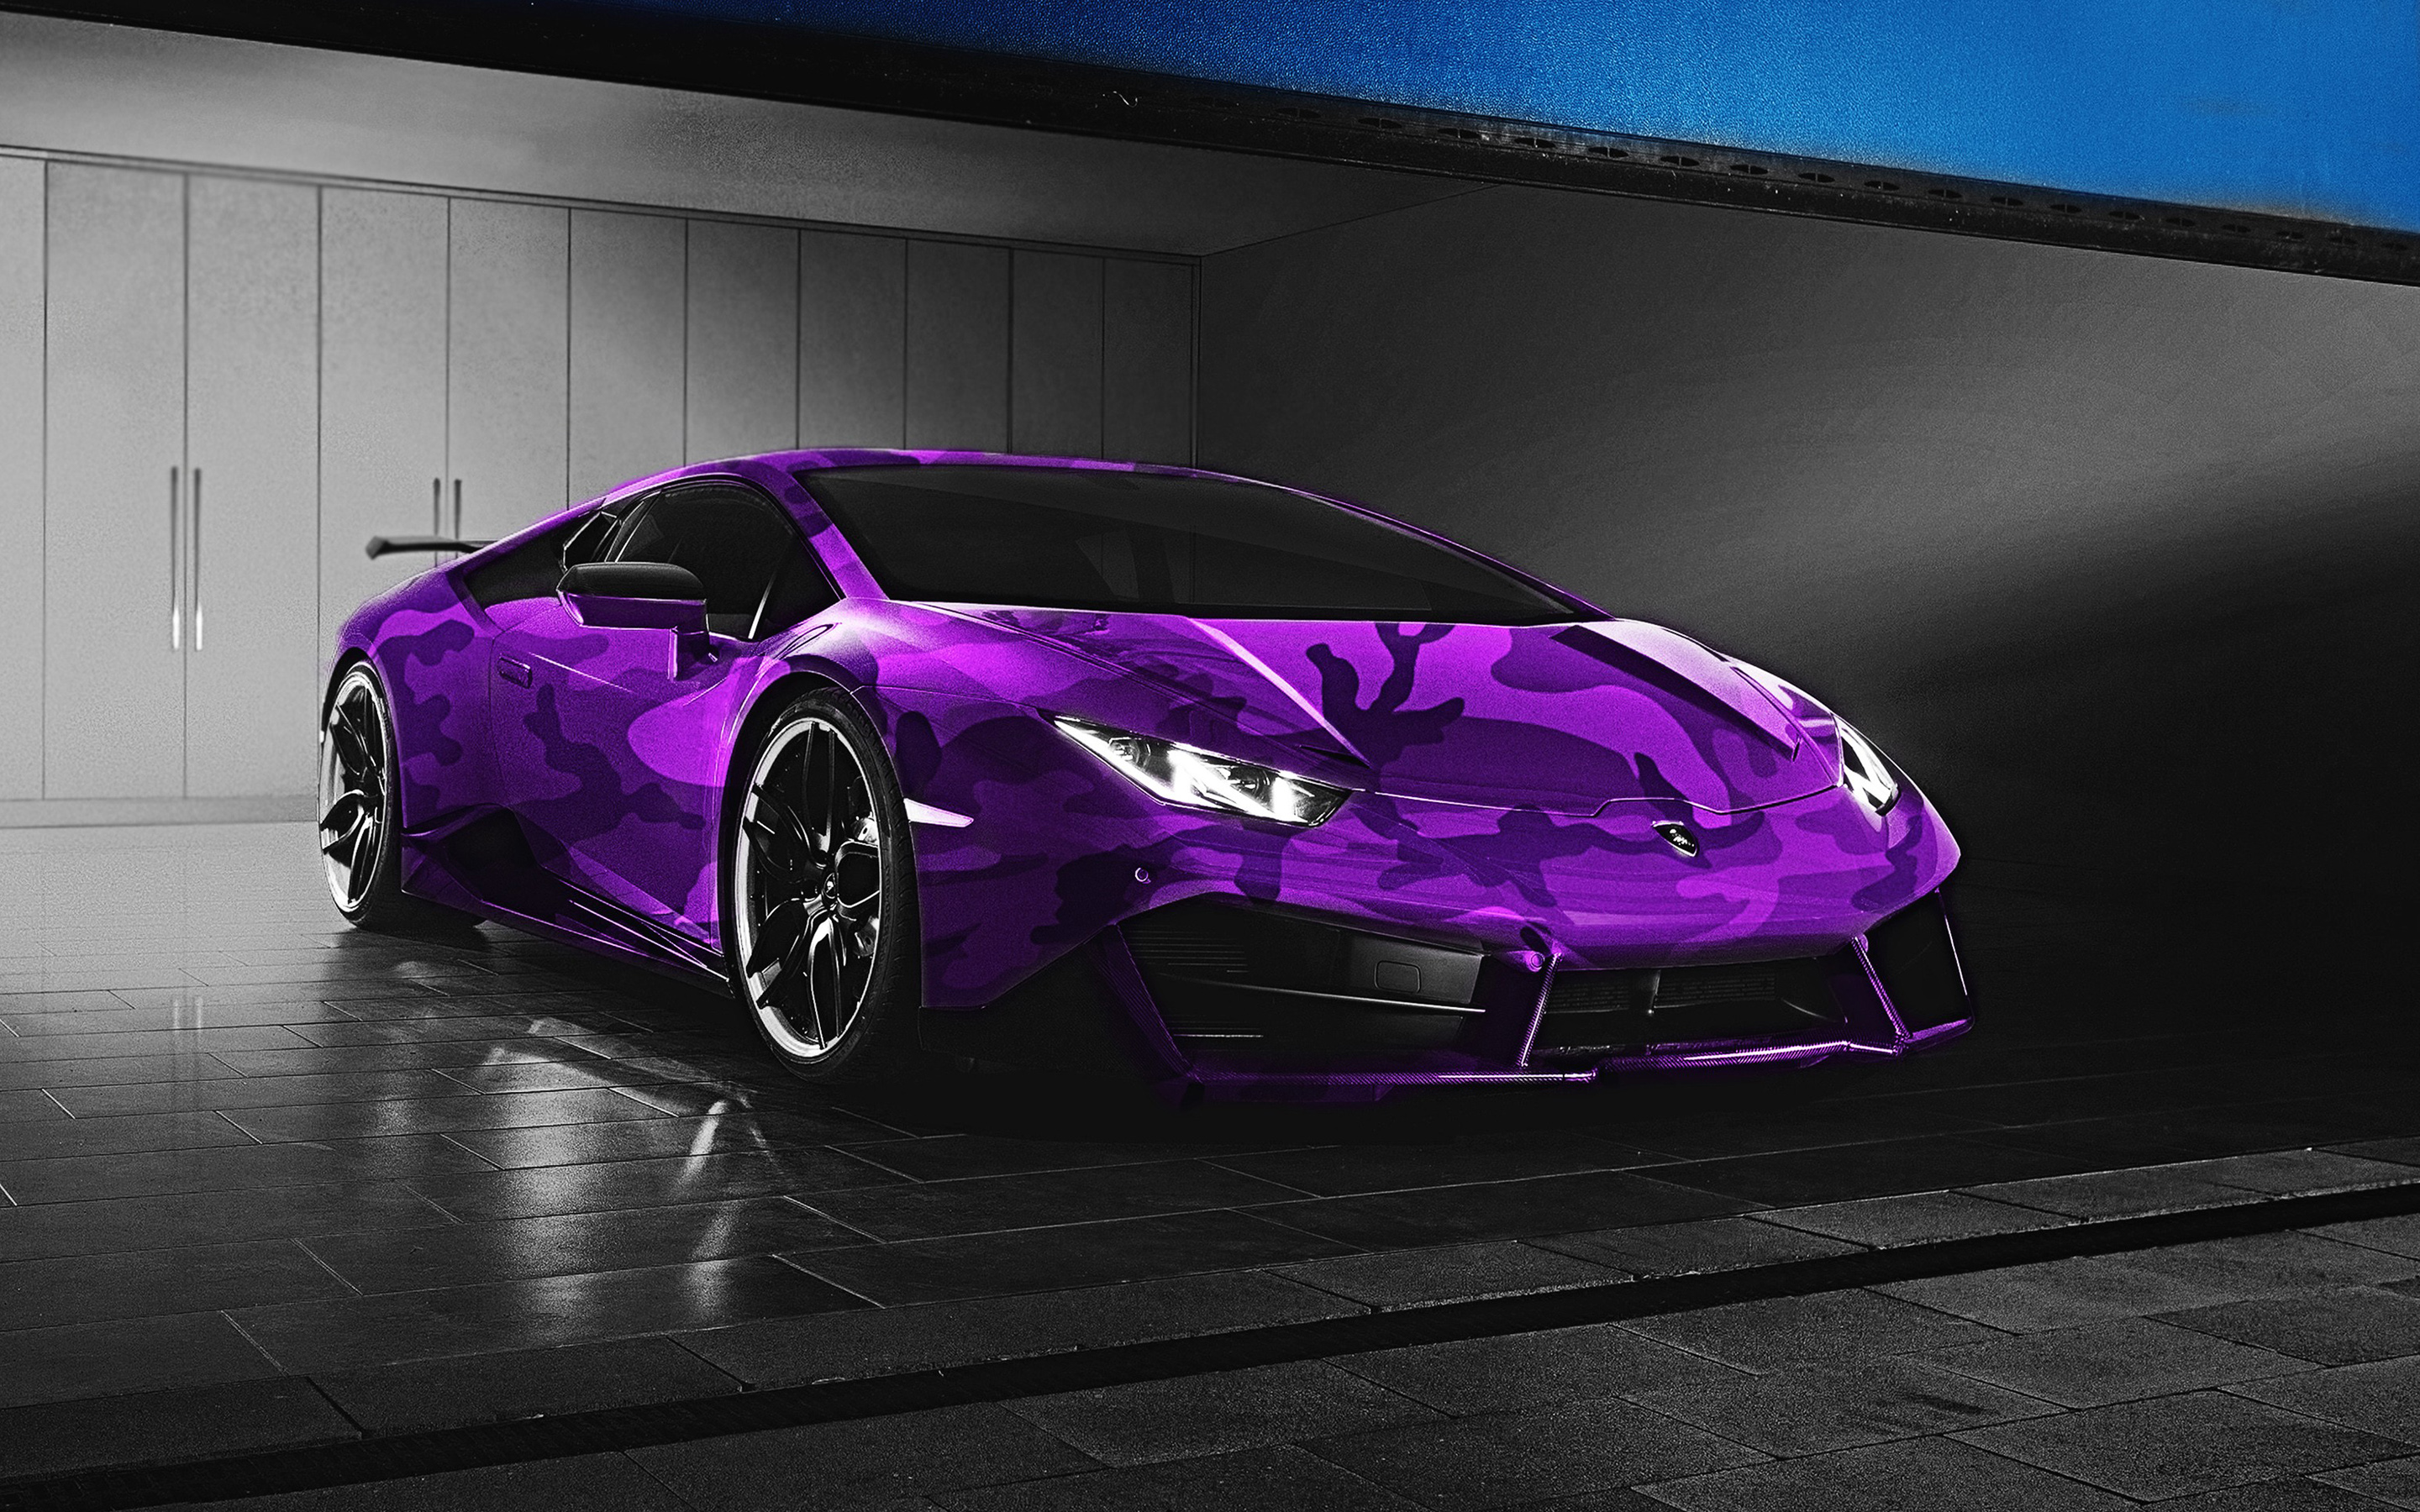 ダウンロード画像 紫ランボルギーニアヴェンsv 19 紫色迷彩 フロントビュー Aventador 紫色のスーパーカー イタリアのスポーツカー ランボルギーニ 画面の解像度 x1800 壁紙デスクトップ上